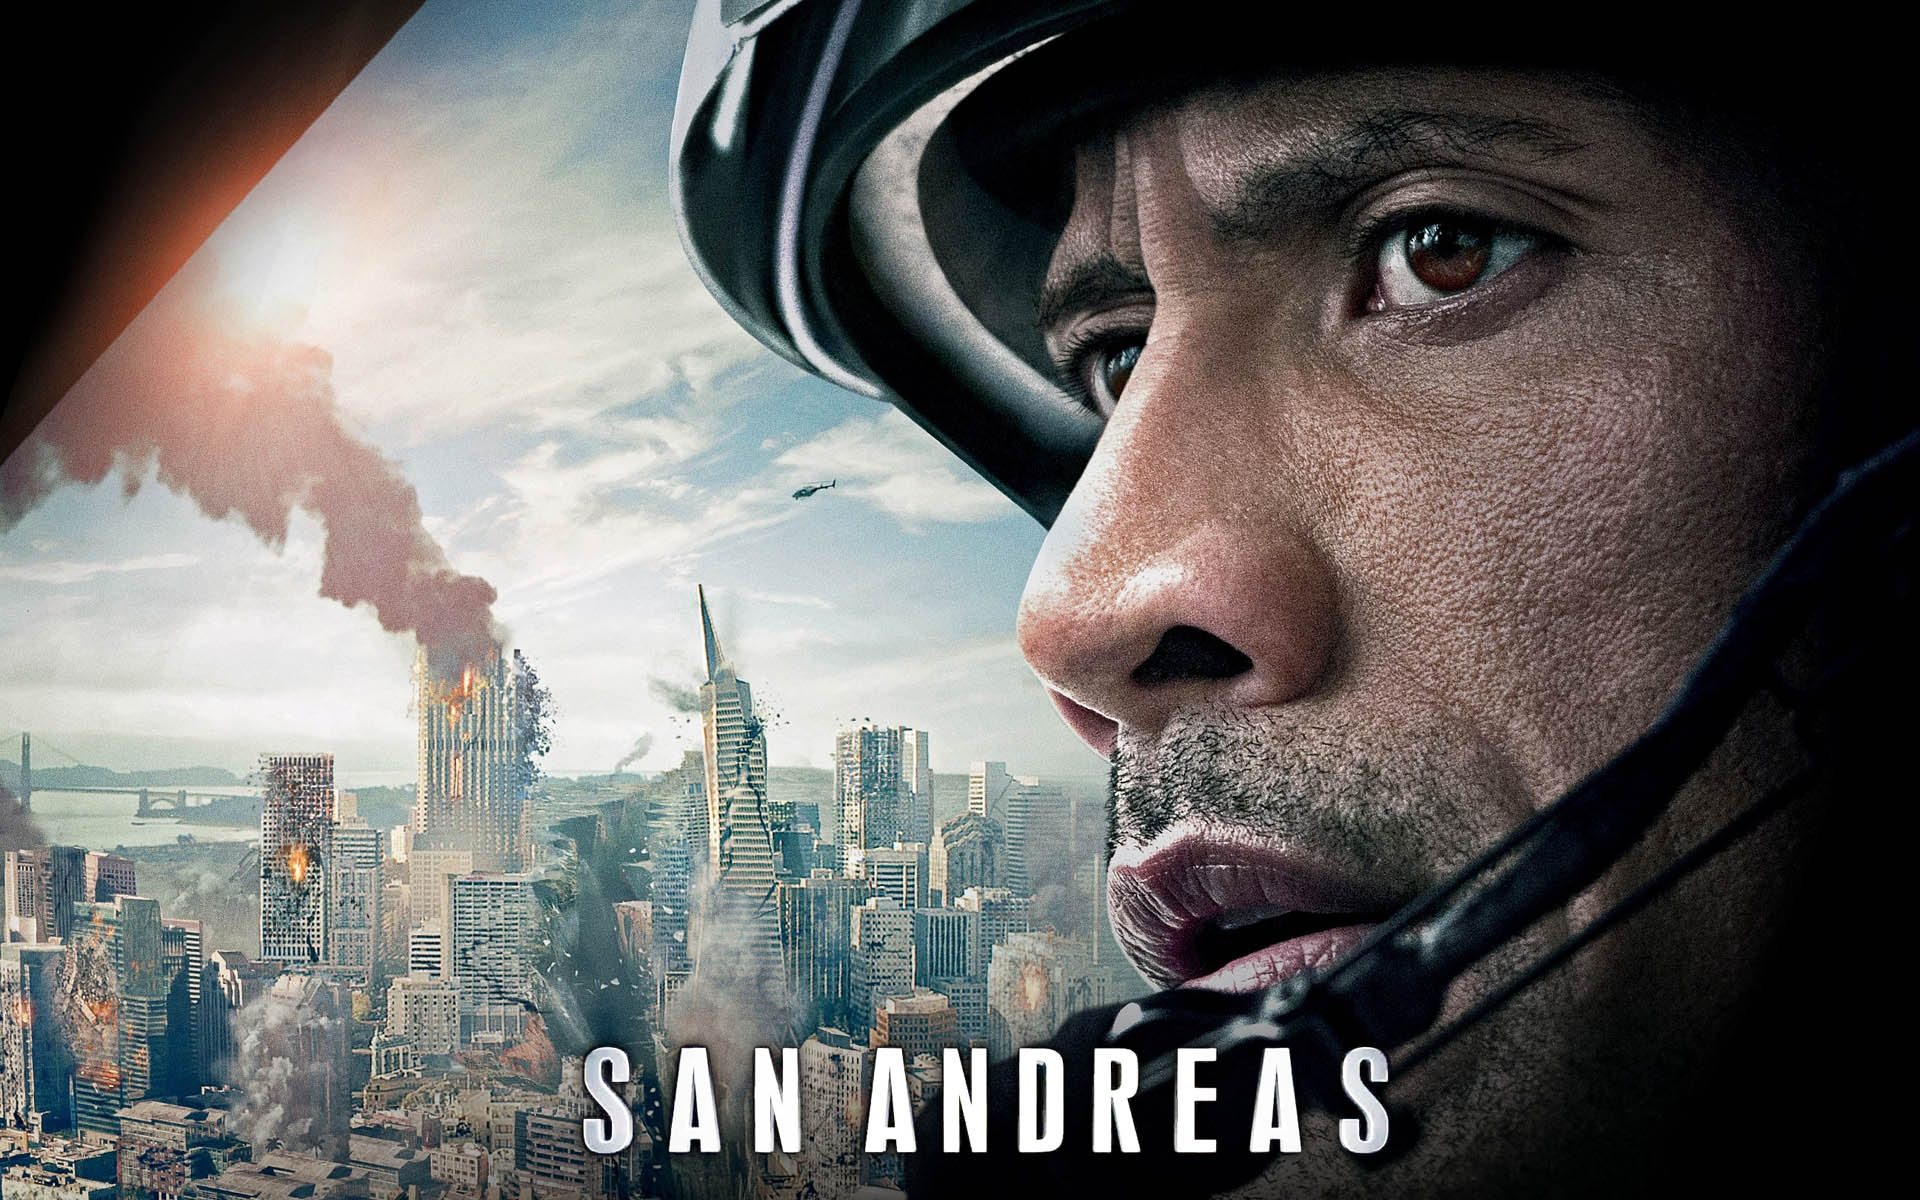 San Andreas Movie Wallpaper - San Andreas 2015 Poster - HD Wallpaper 